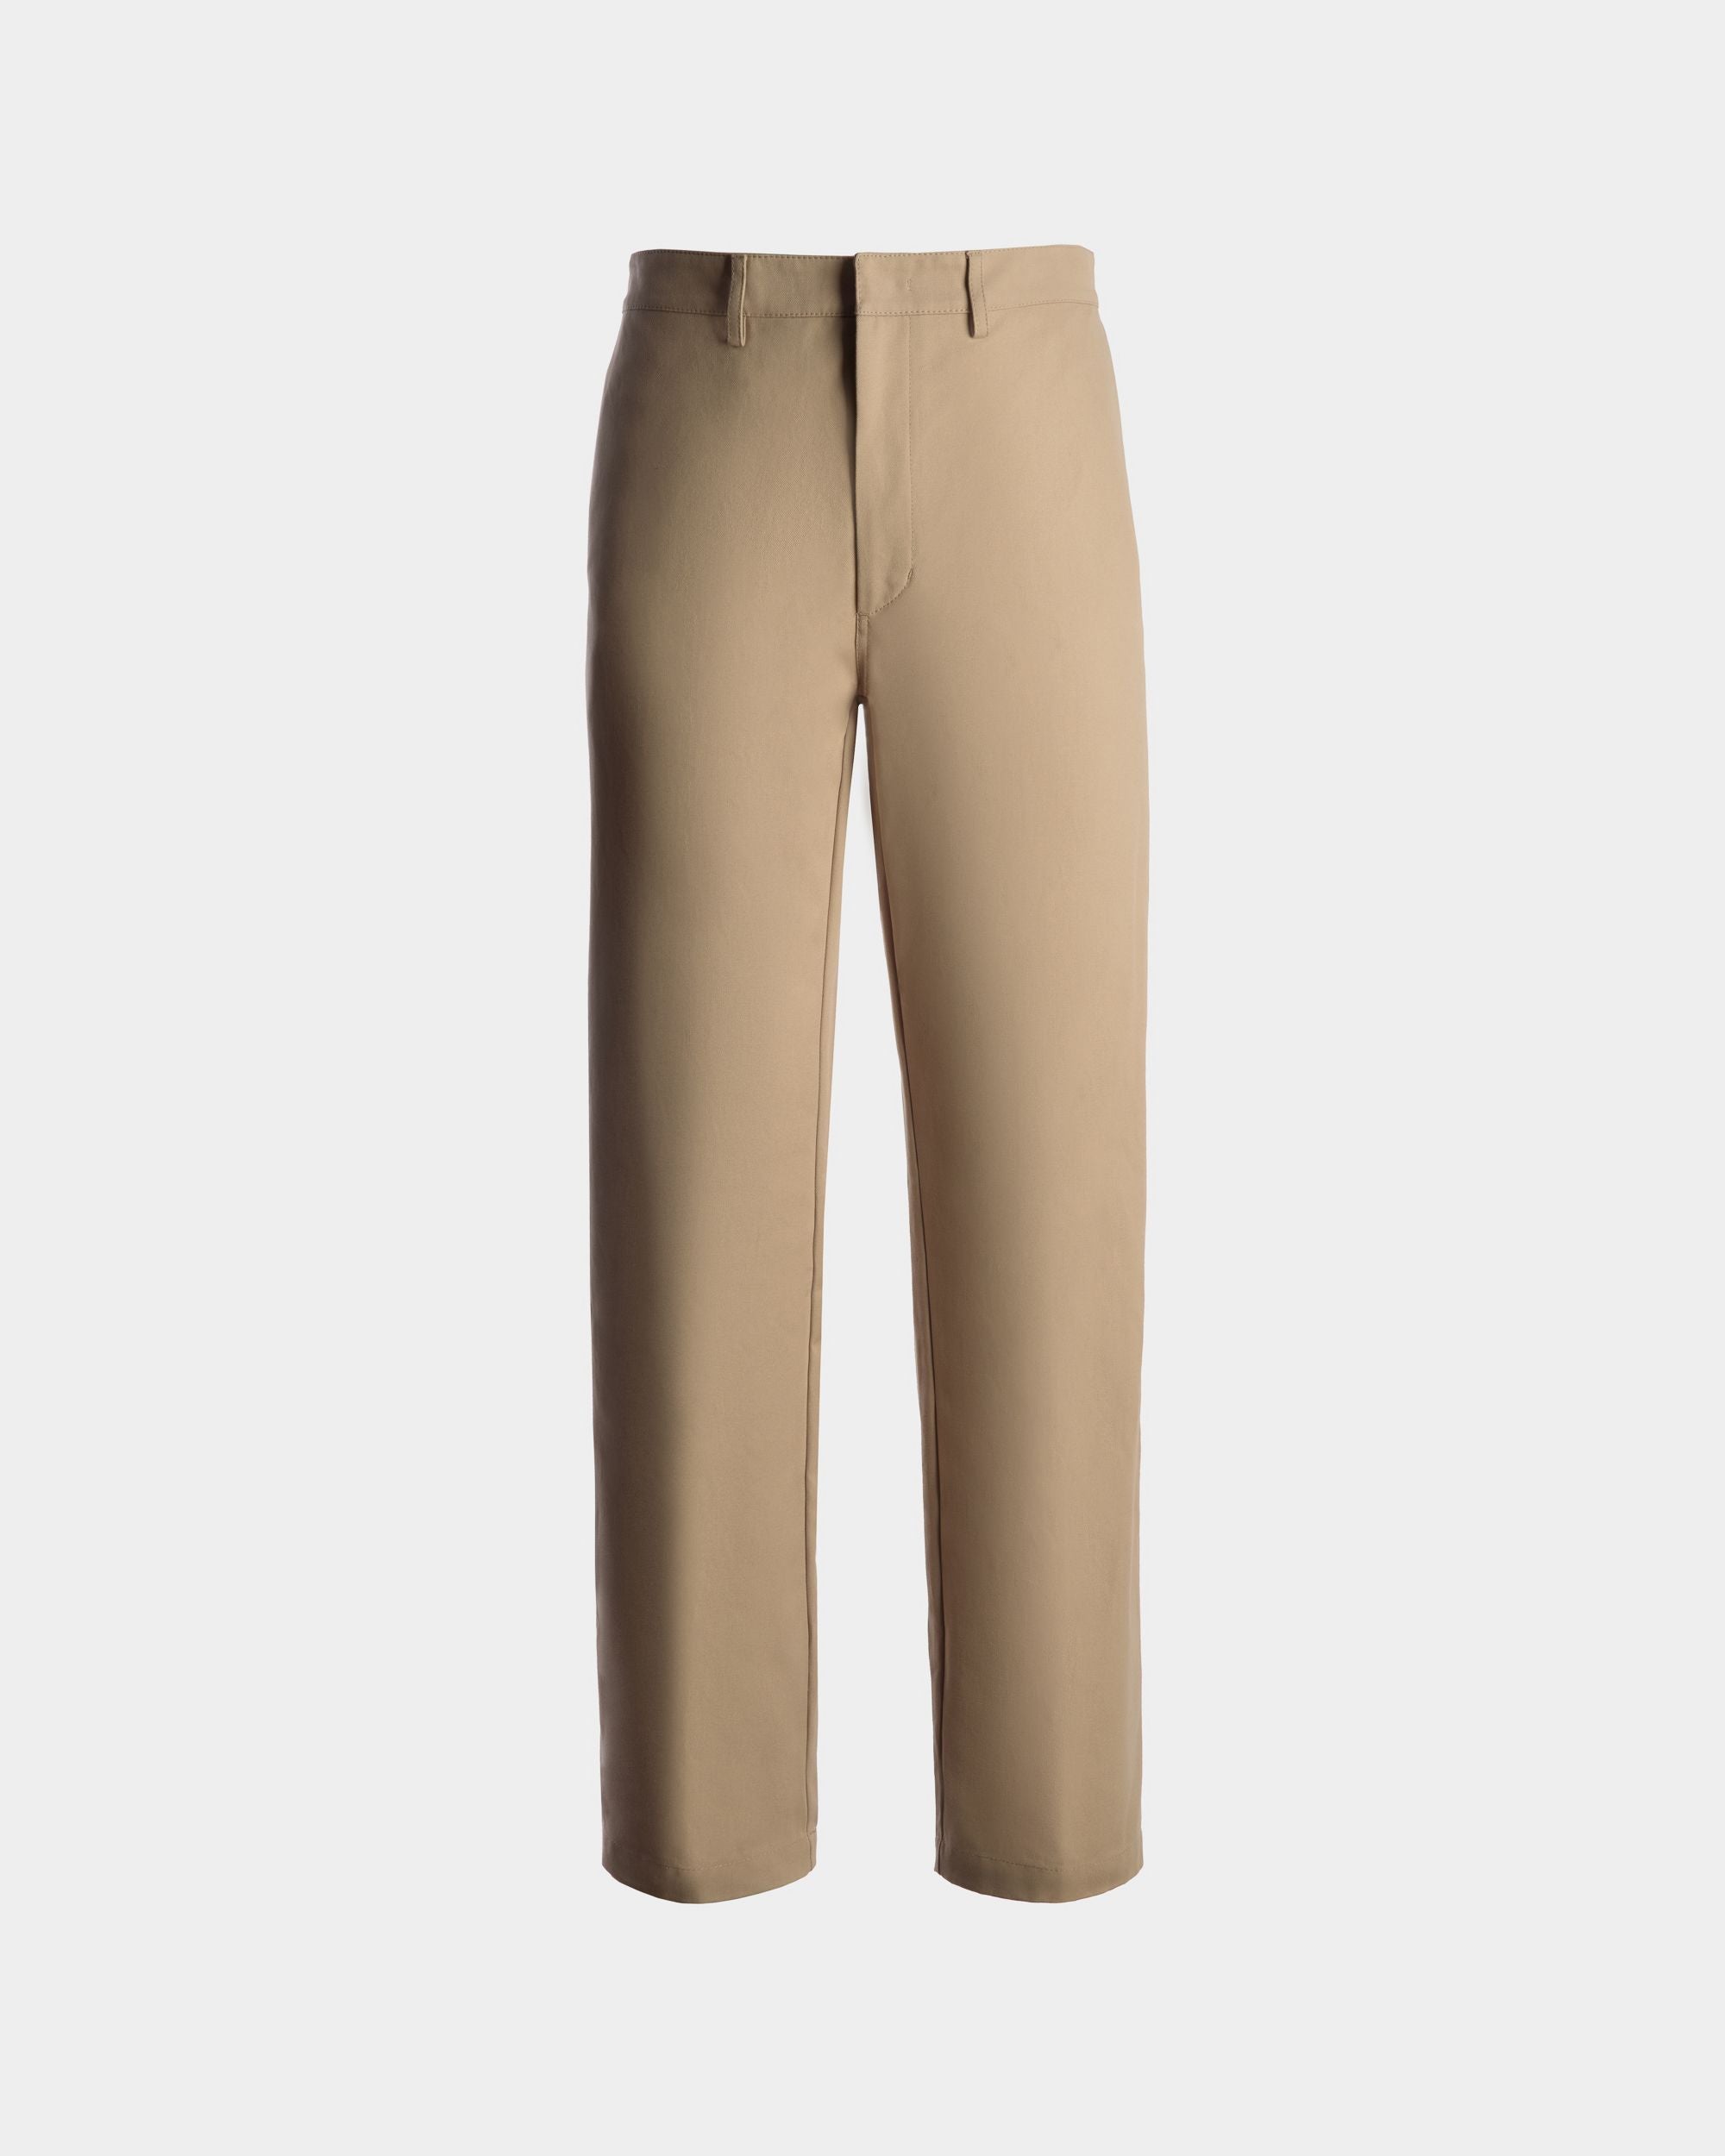 Pantalone da uomo in cotone color cammello | Bally | Still Life Fronte